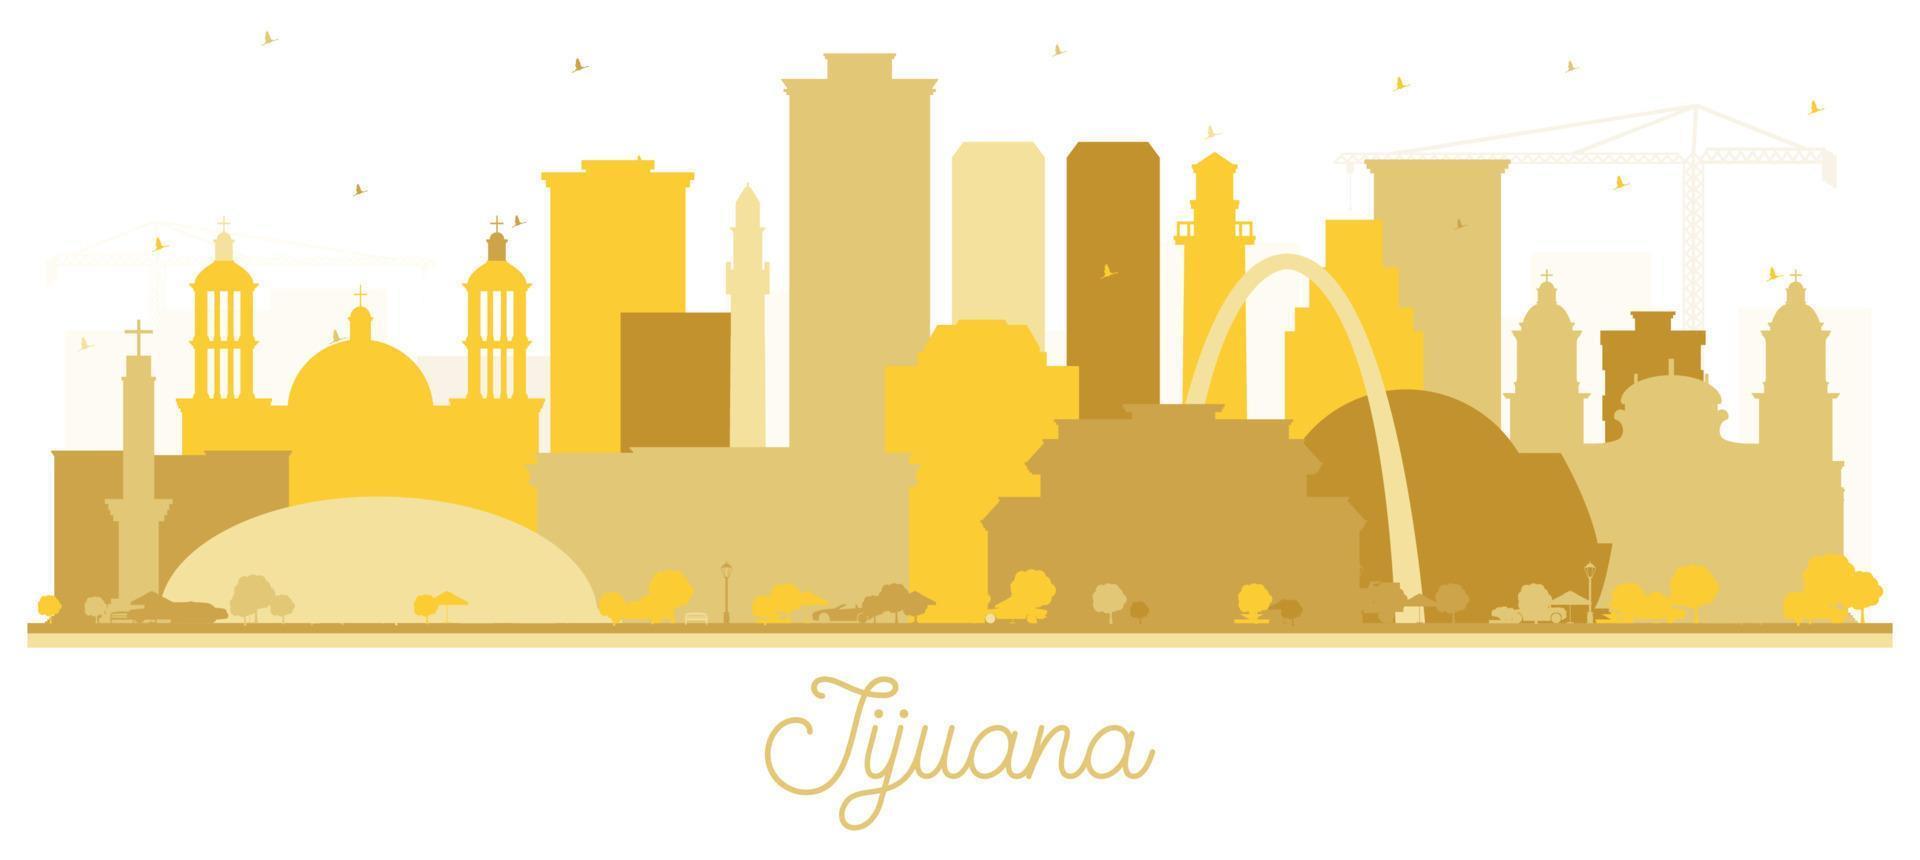 tijuana mexiko city skyline silhouette mit goldenen gebäuden isoliert auf weiß. vektor